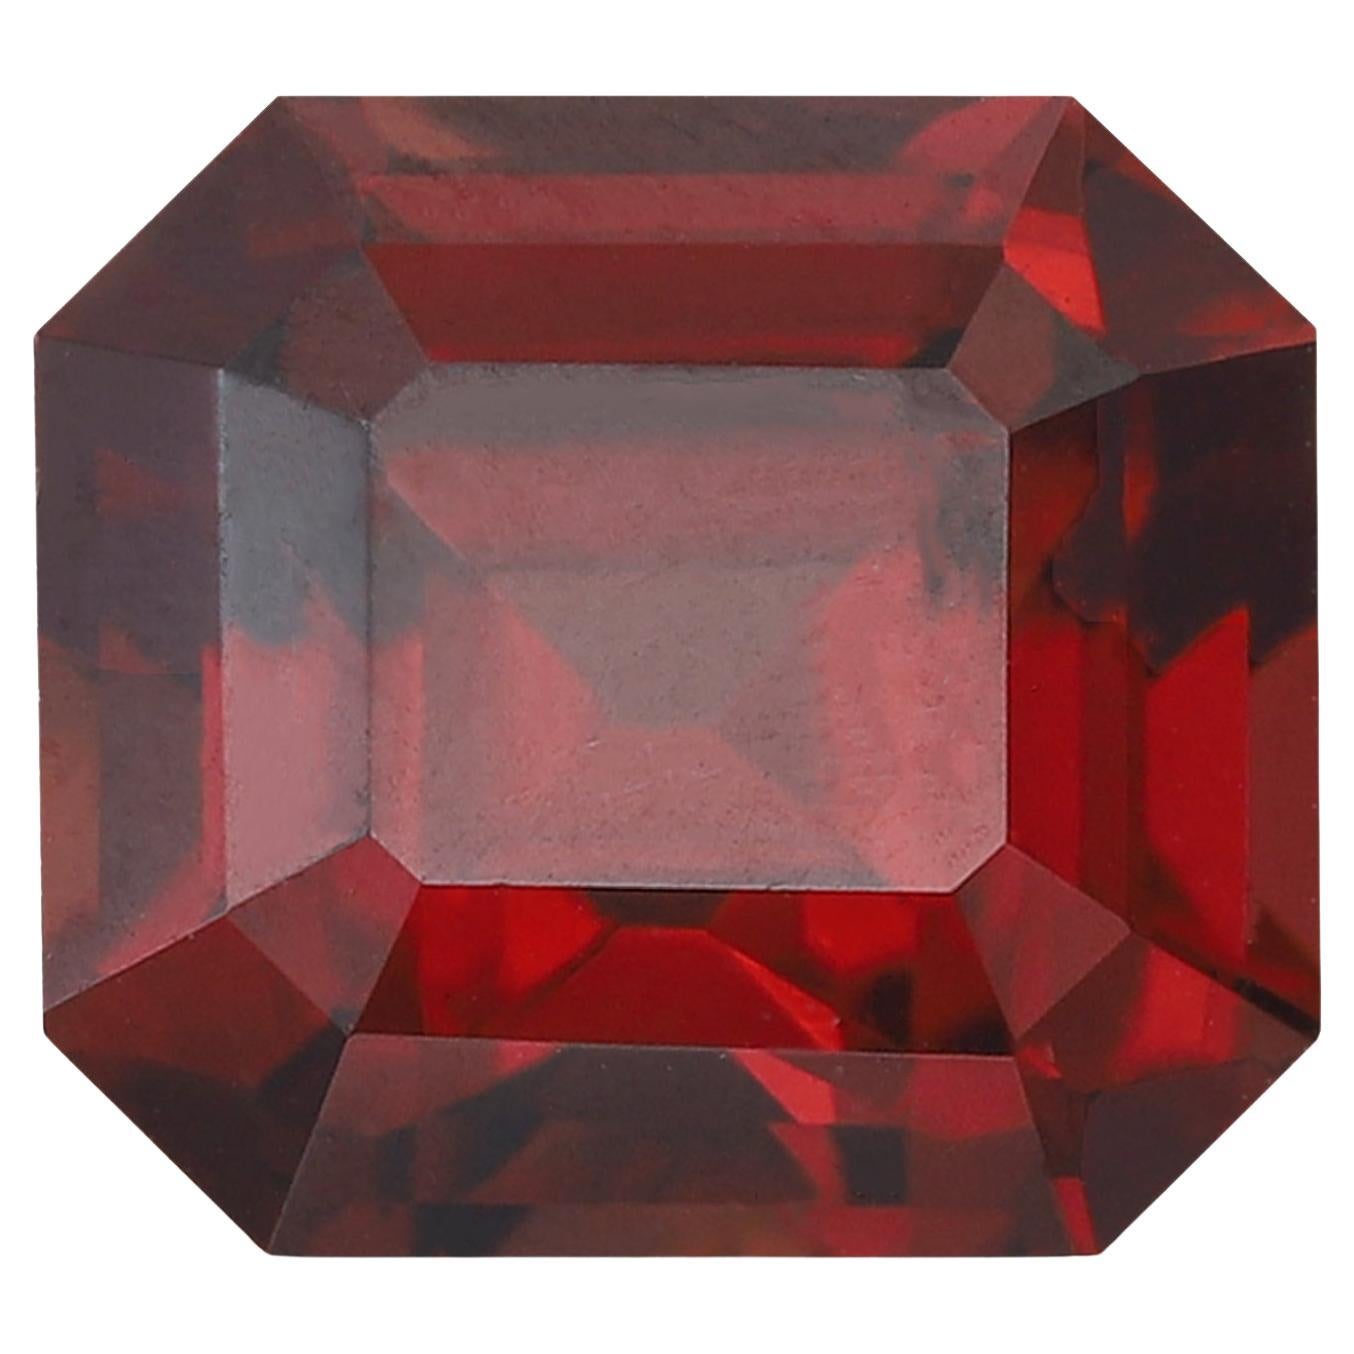 Soft Red Malawi Garnet Stone Jewelry 1.45 Carats Garnet Stone for Jewelry